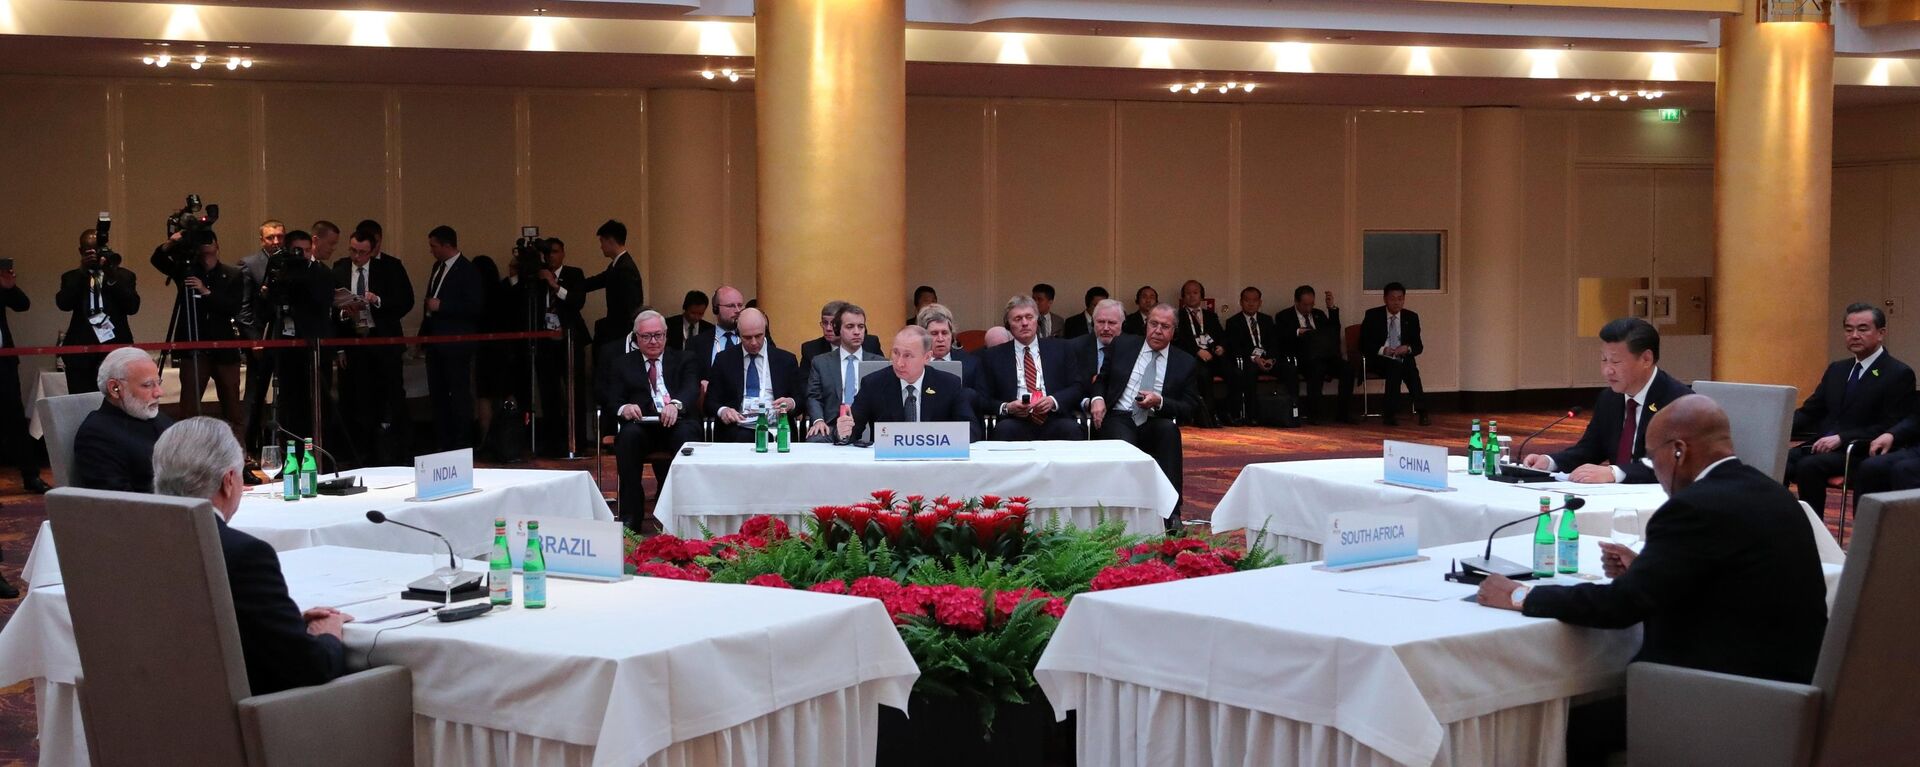 Президент РФ Владимир Путин на встрече лидеров стран БРИКС в преддверии саммита Группы двадцати G20 в Гамбурге - Sputnik Латвия, 1920, 26.06.2022